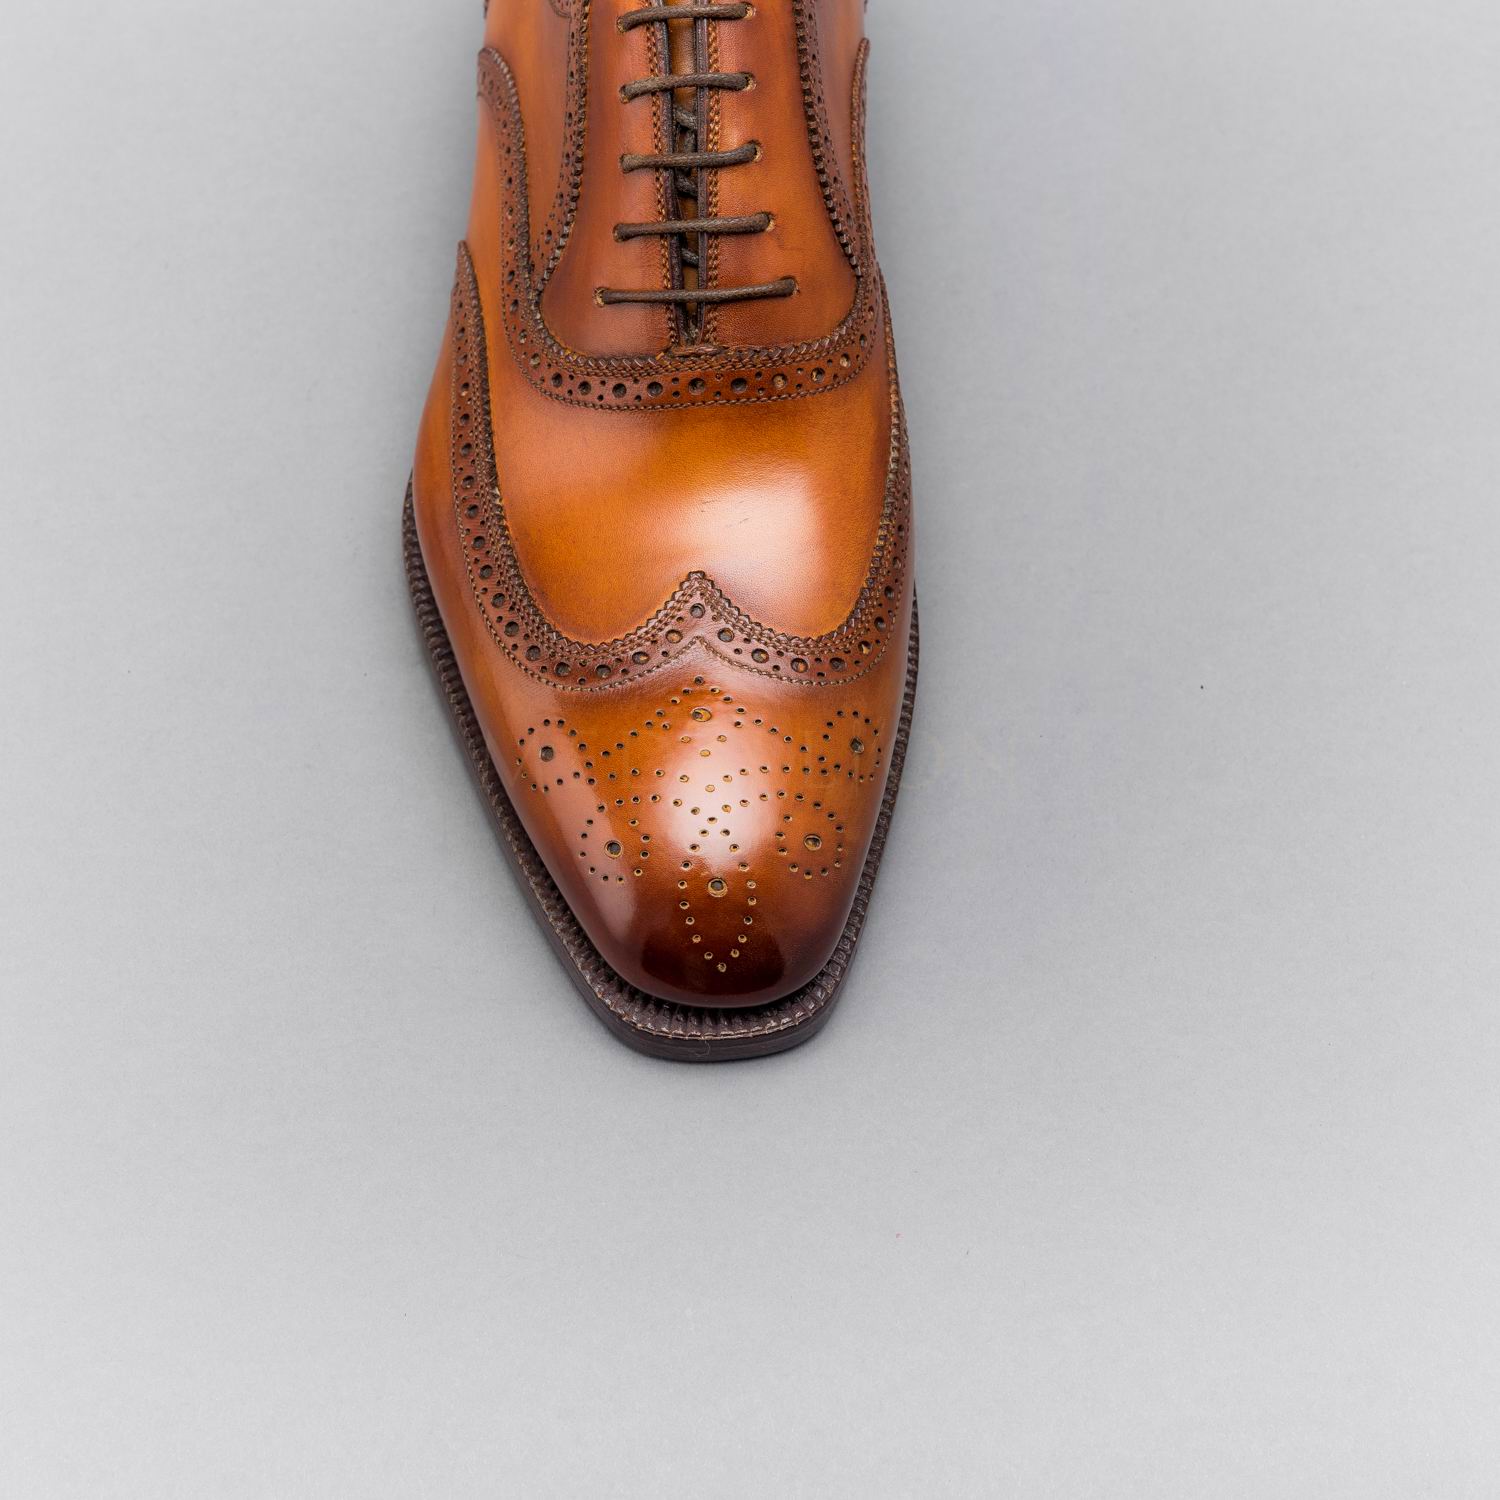 Antonio Meccariello, Full Brogue Oxford, Italy – Medallion Shoes